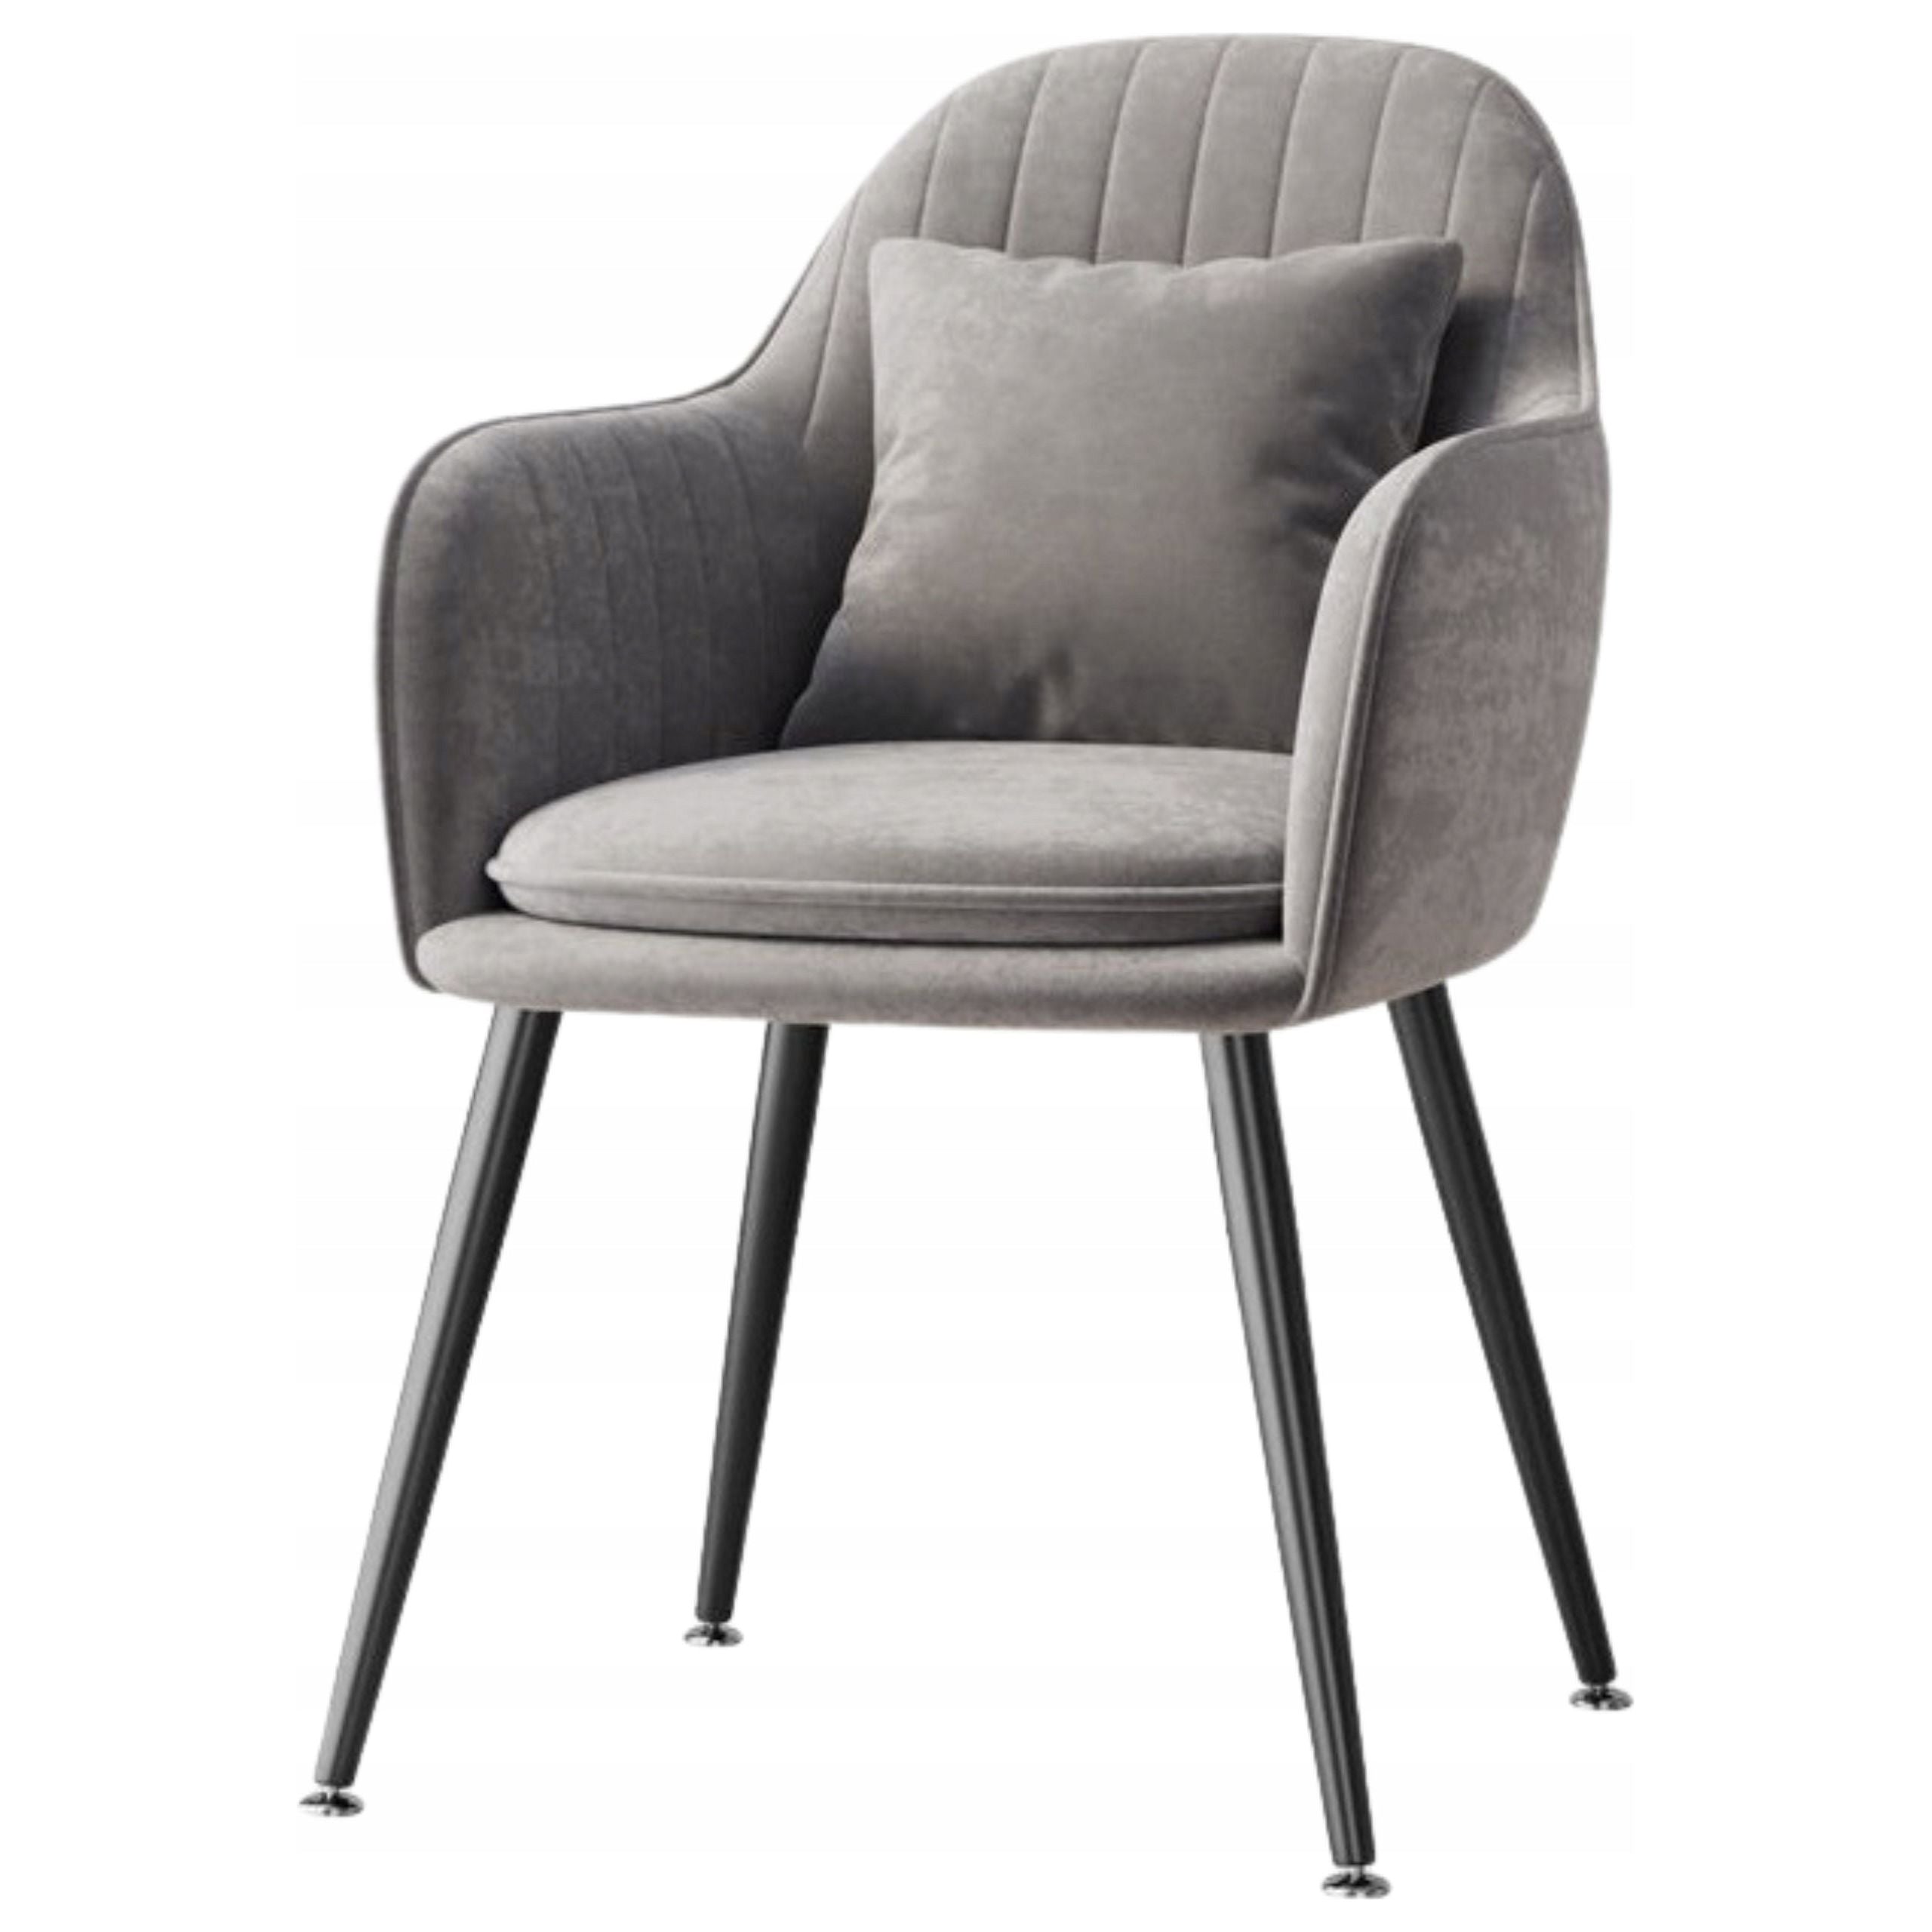 Fløyelspolstret loftstil stol moderne og elegant med pute